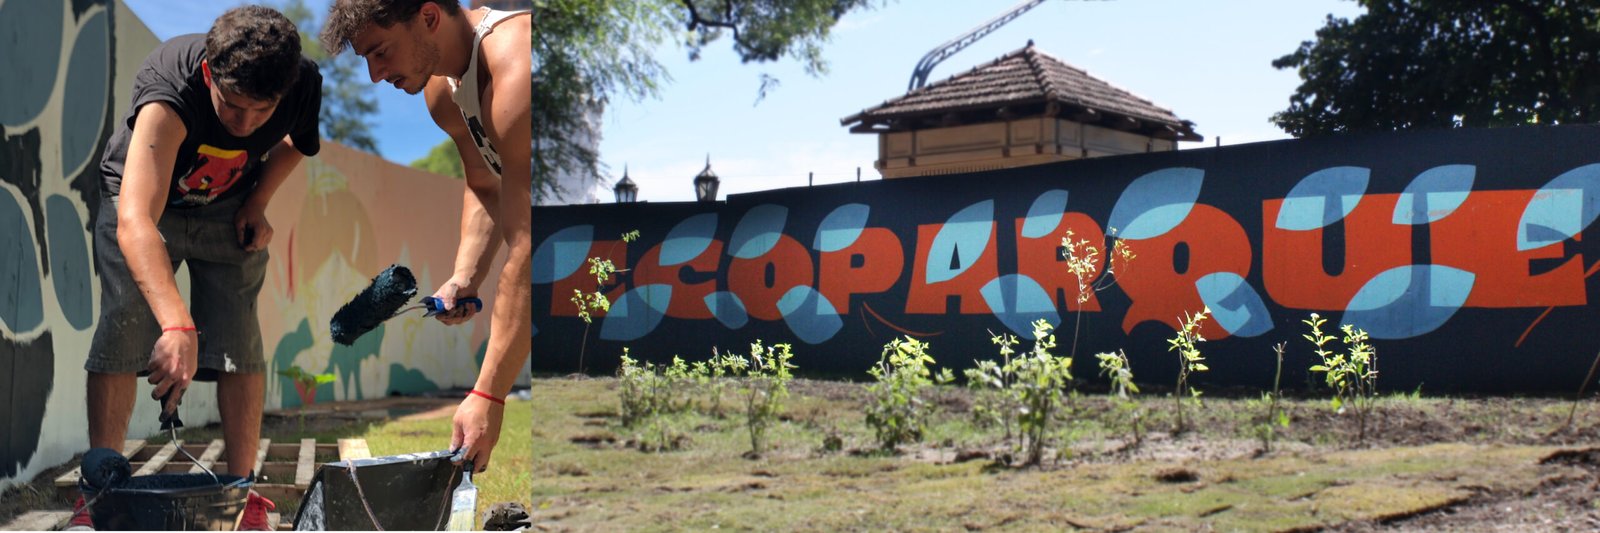 Mural - Ecoparque